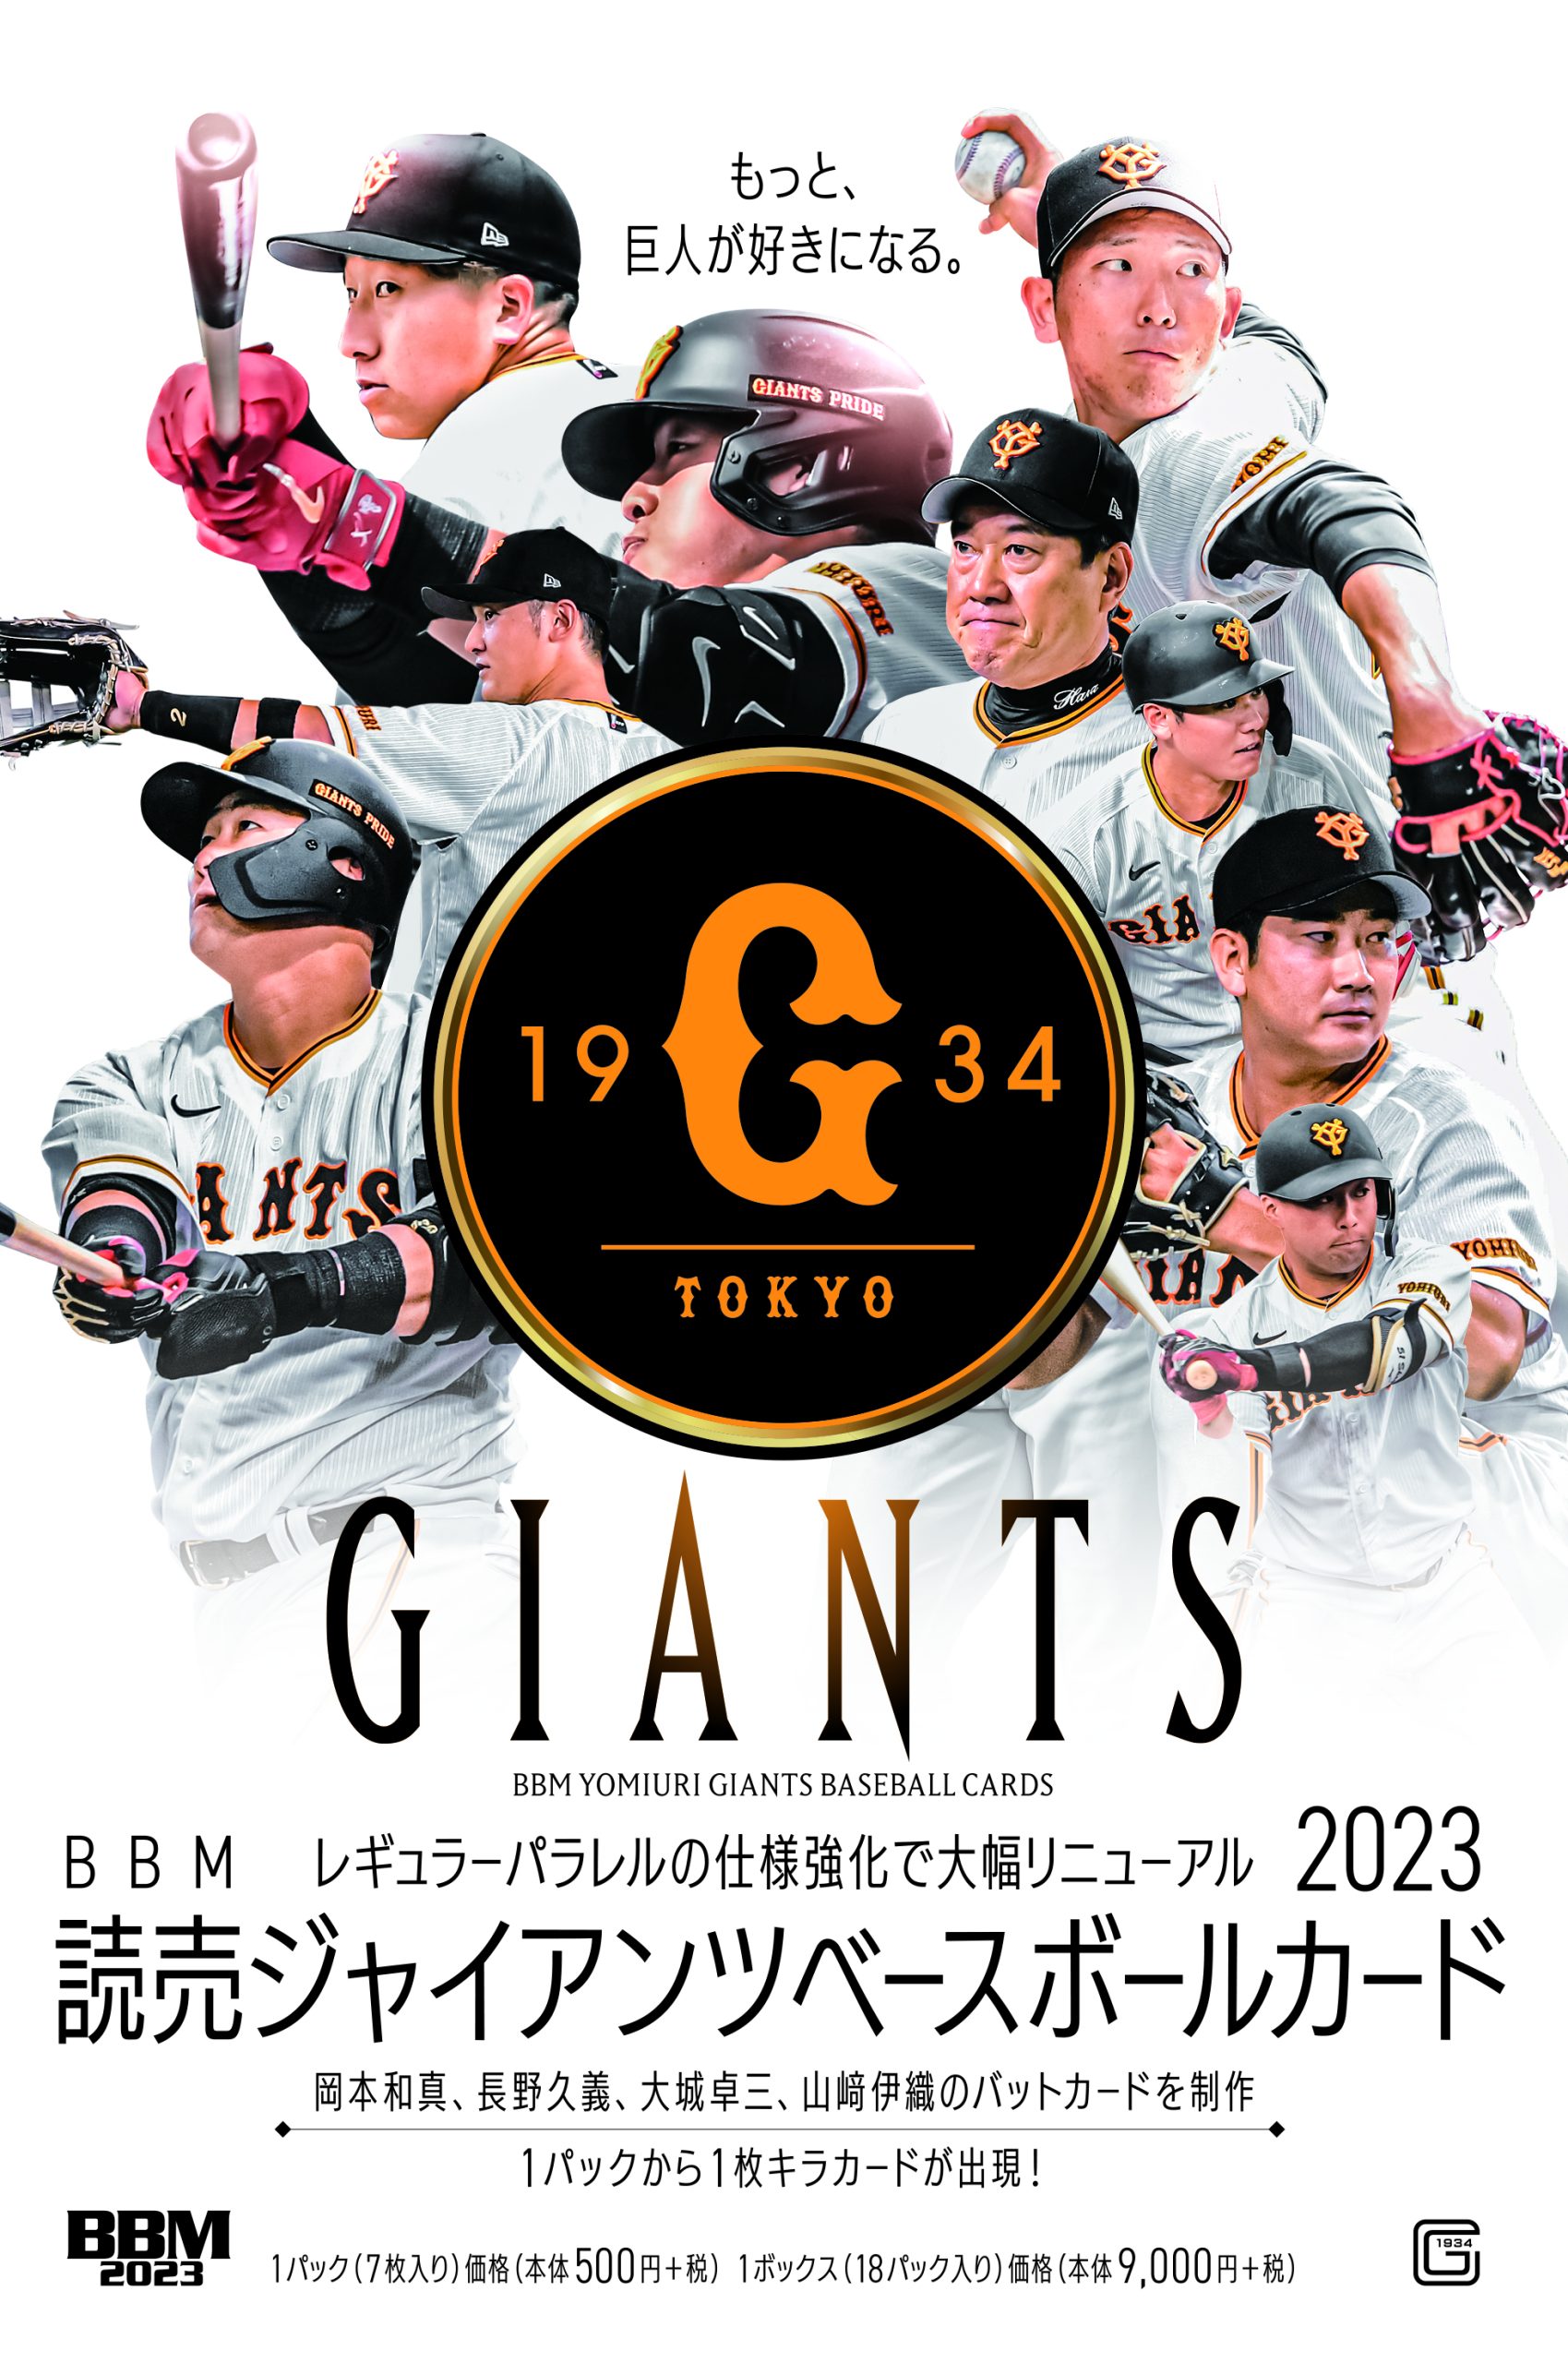 ⚾ BBM 読売ジャイアンツ ベースボールカード 2023【製品情報 ...